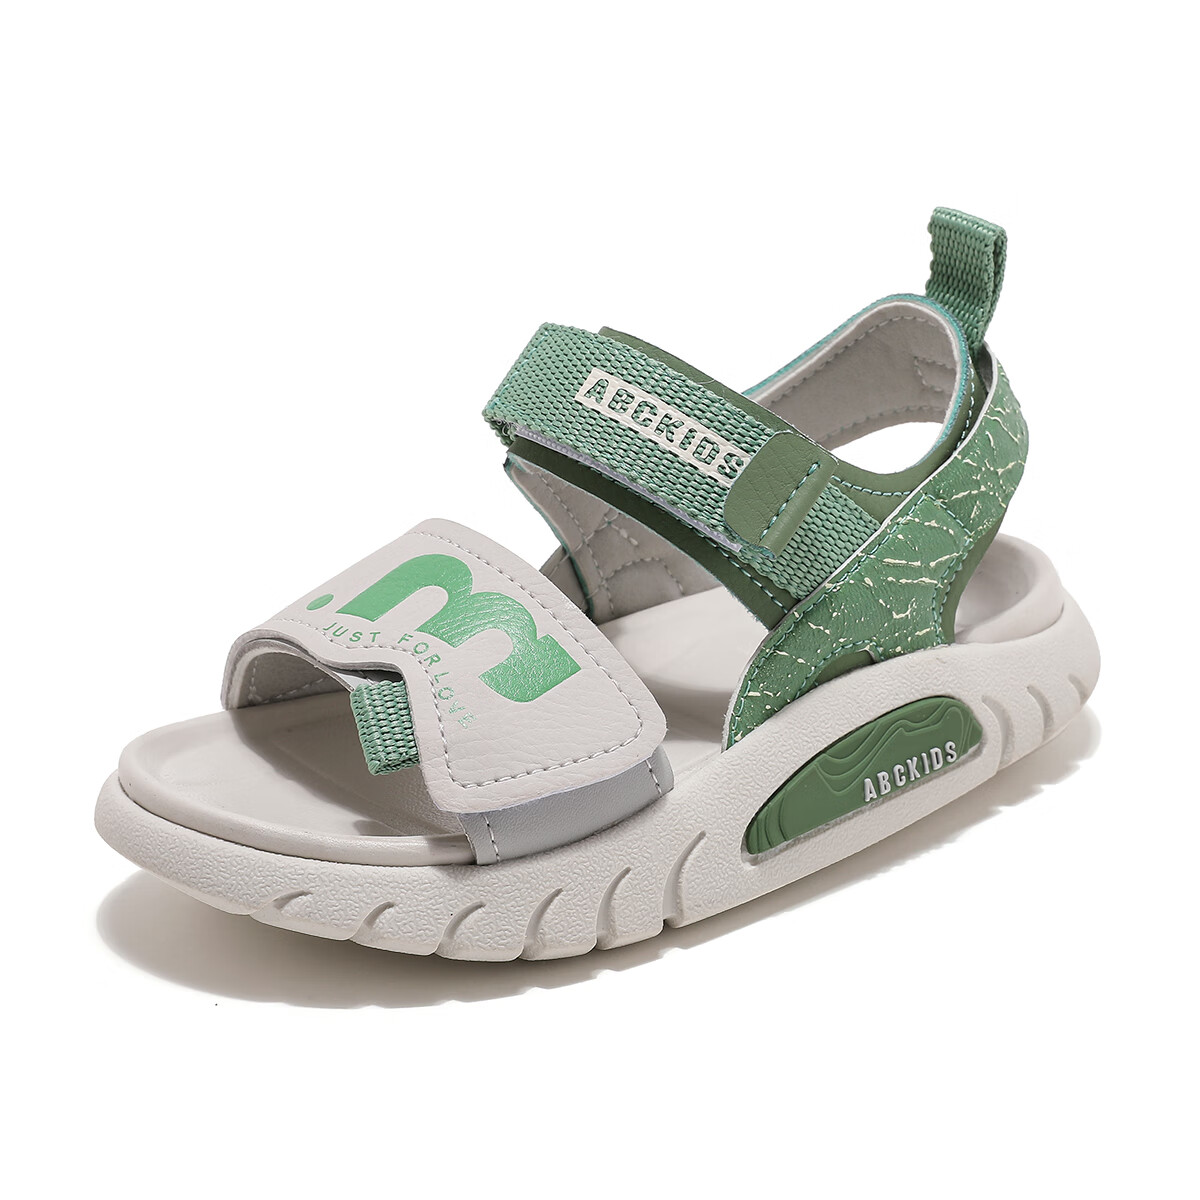 ABC KIDS童鞋夏季轻便舒适透气休闲百搭儿童运动凉鞋 白绿色 28码 内长约17.5cm